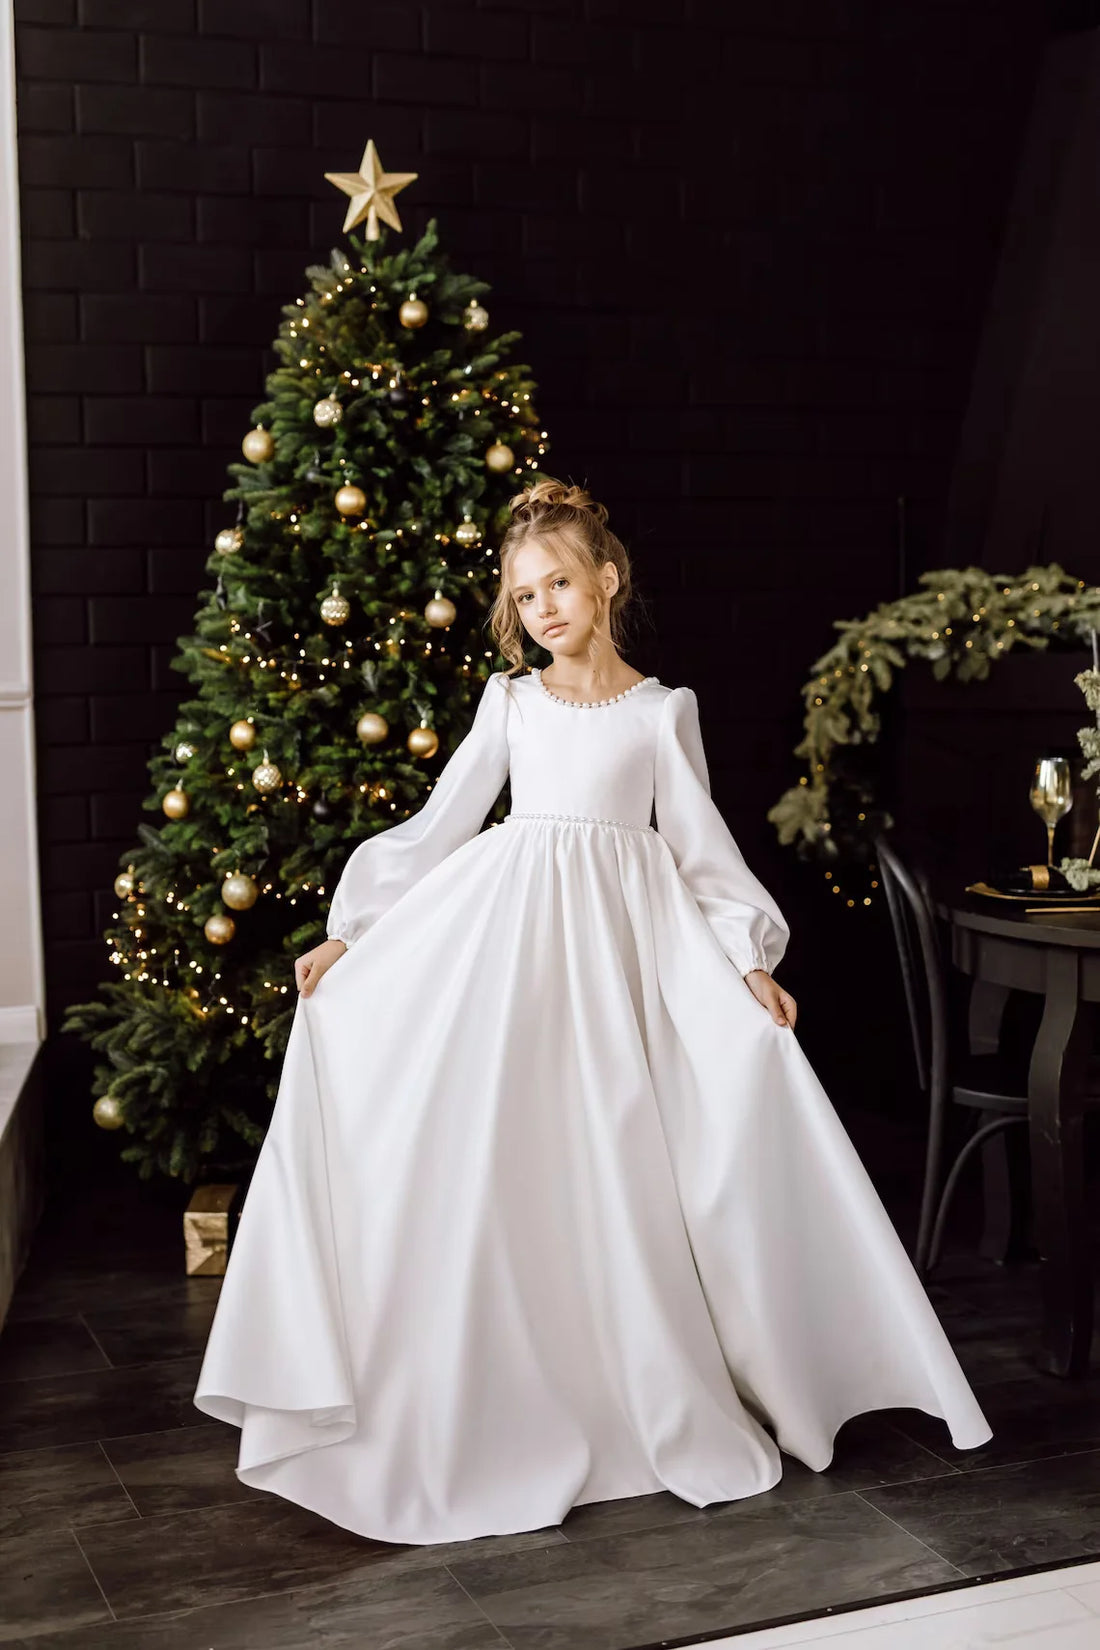 Elegant White Satin Flower Girl Dresses for Weddings White by Baby Minaj Cruz